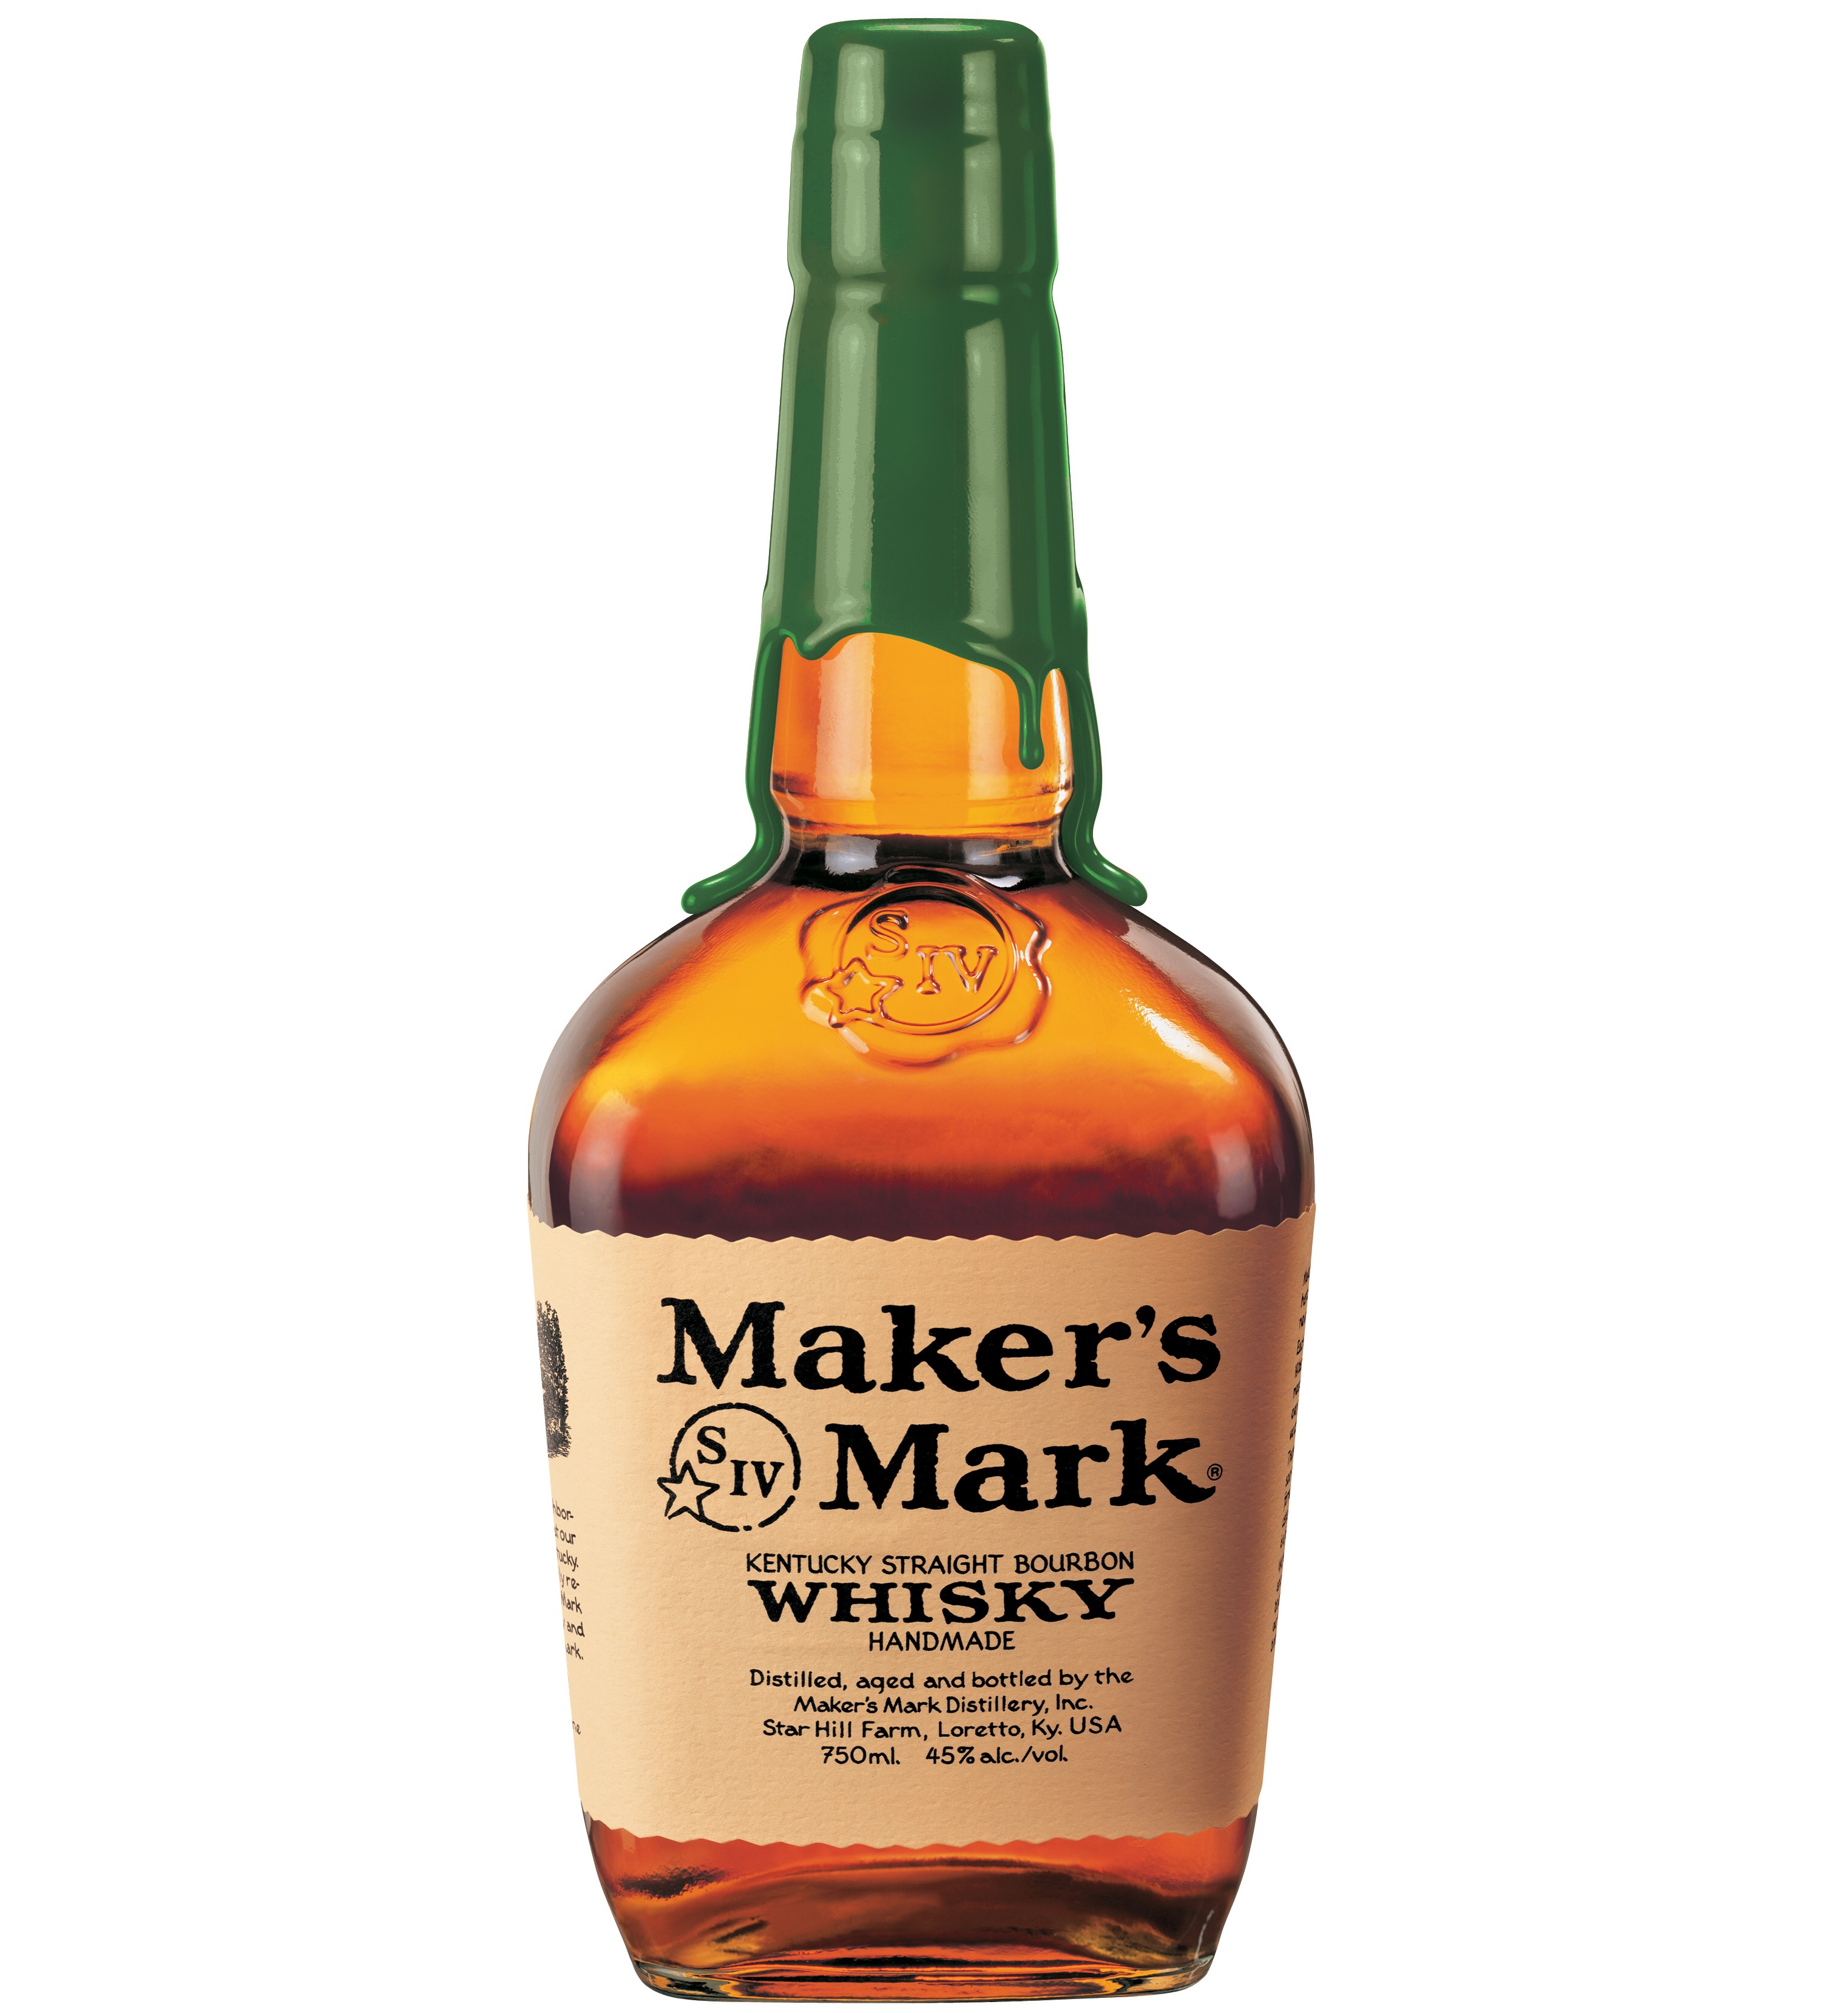 Maker’s Mark Rye Whisky. Photo definitely not courtesy of Maker’s Mark.